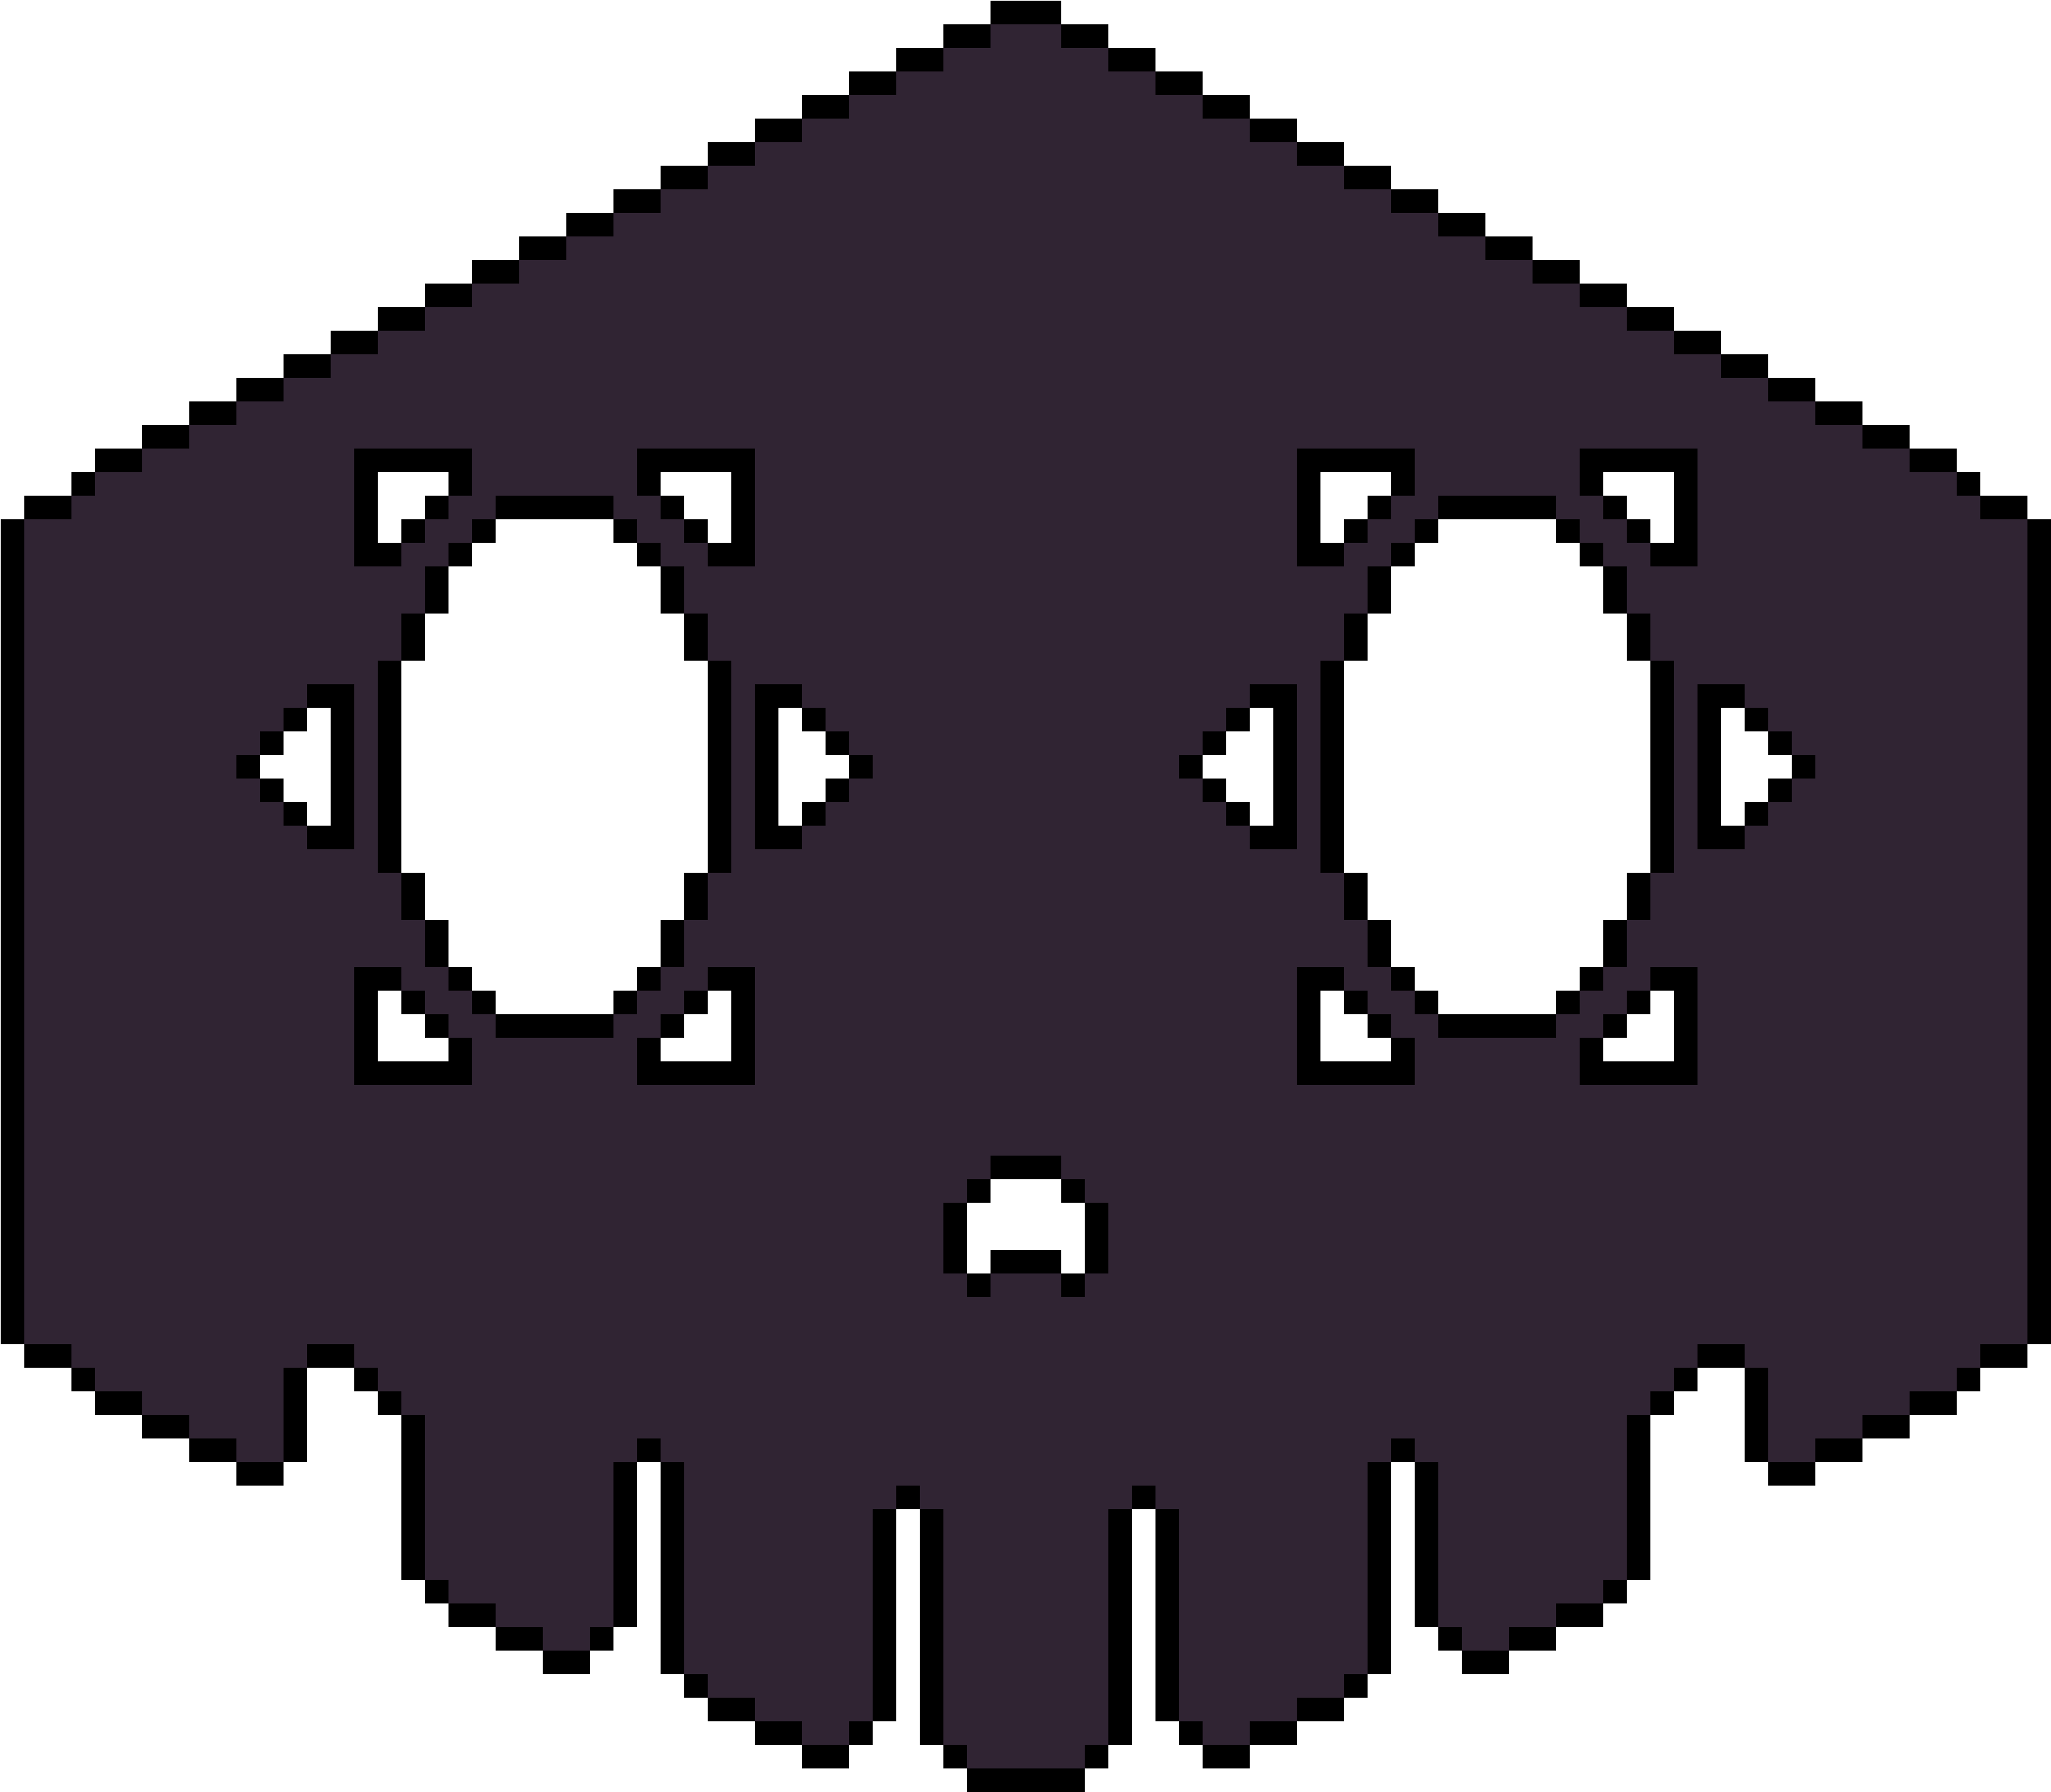 Sombra Emp Skull - Illustration Clipart - Large Size Png Image - PikPng.